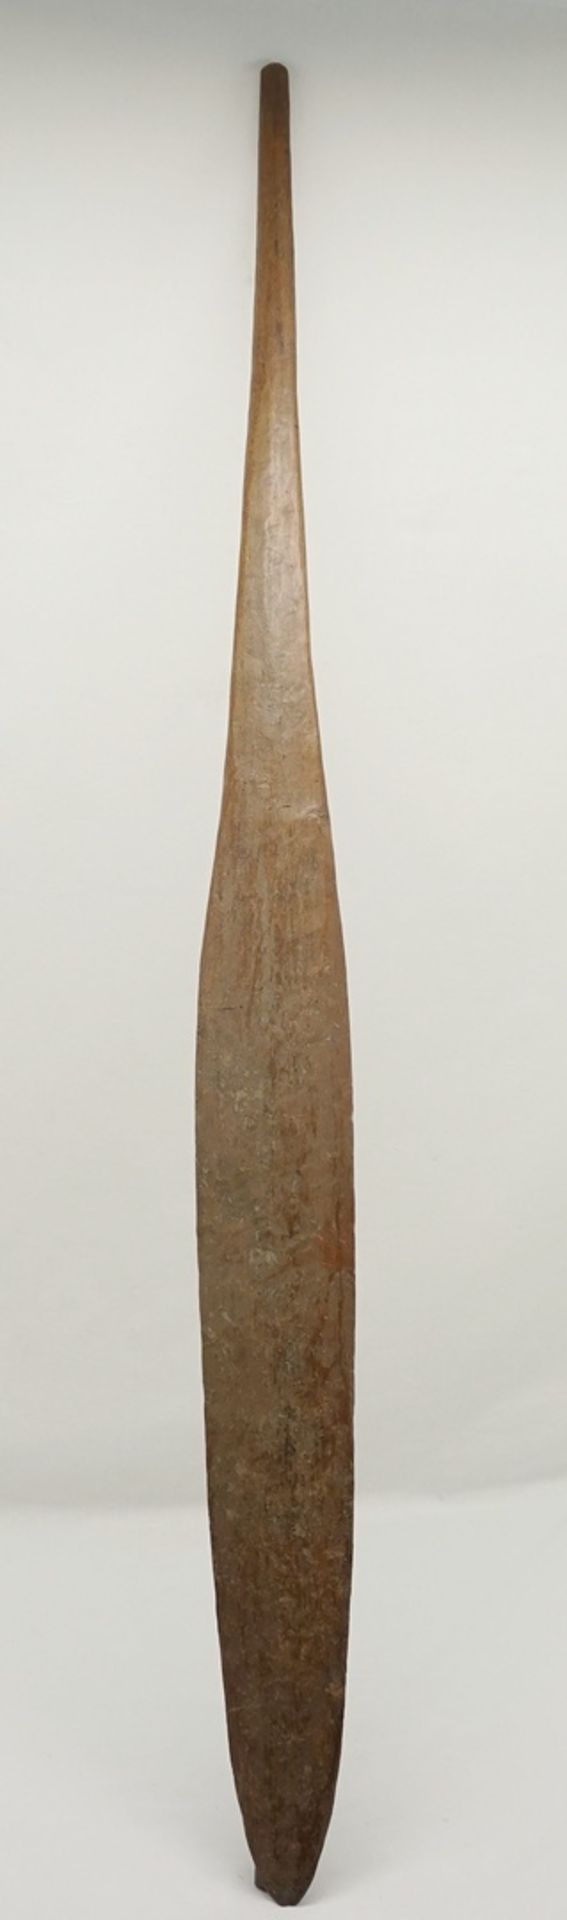 Paddel Australien, 19. Jh.Holz mit brauner Patina, alter Sammlungsaufkleber "Australien 111" und